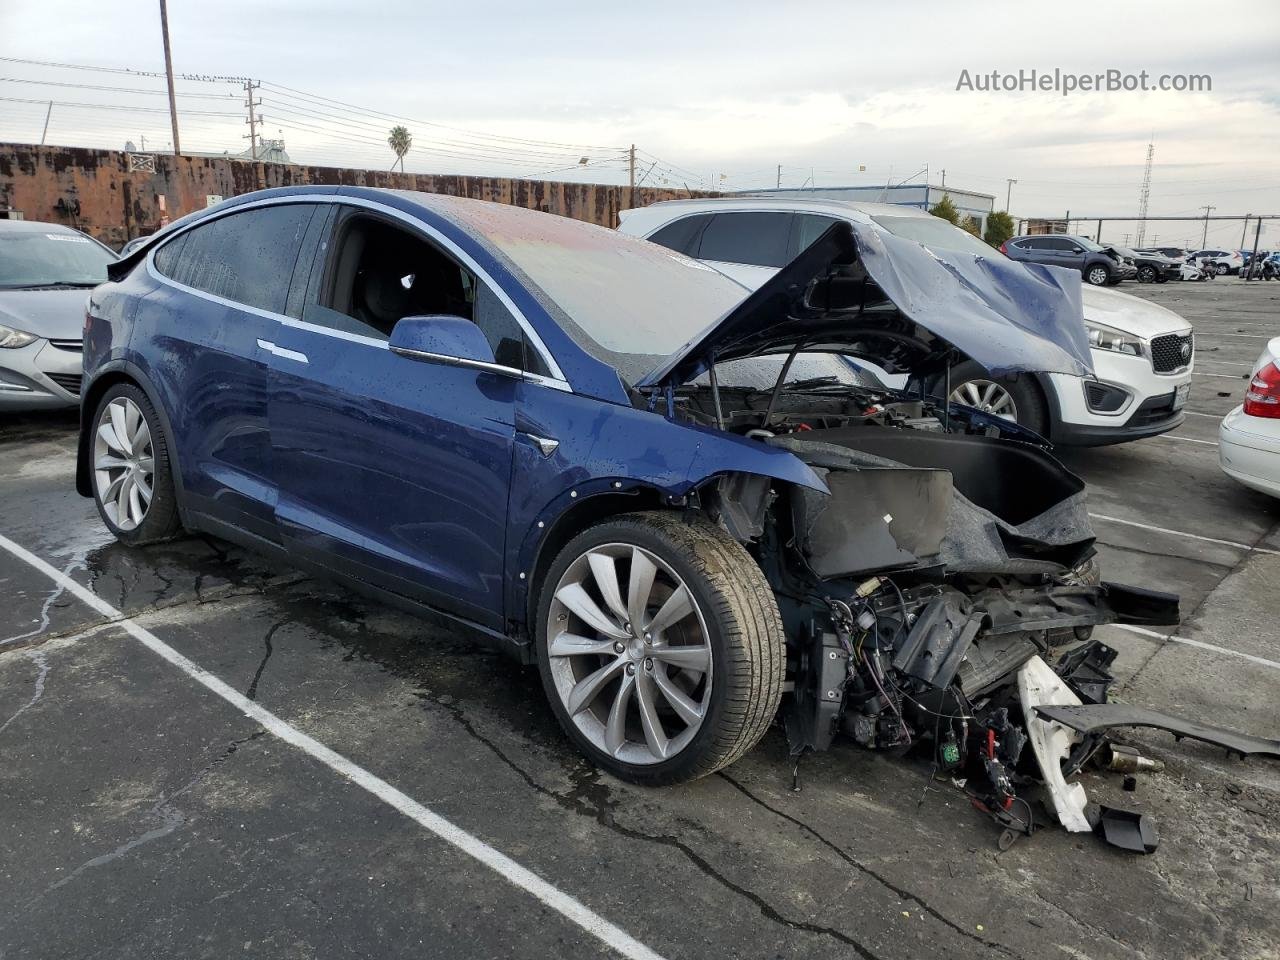 2018 Tesla Model X  Blue vin: 5YJXCDE29JF140056